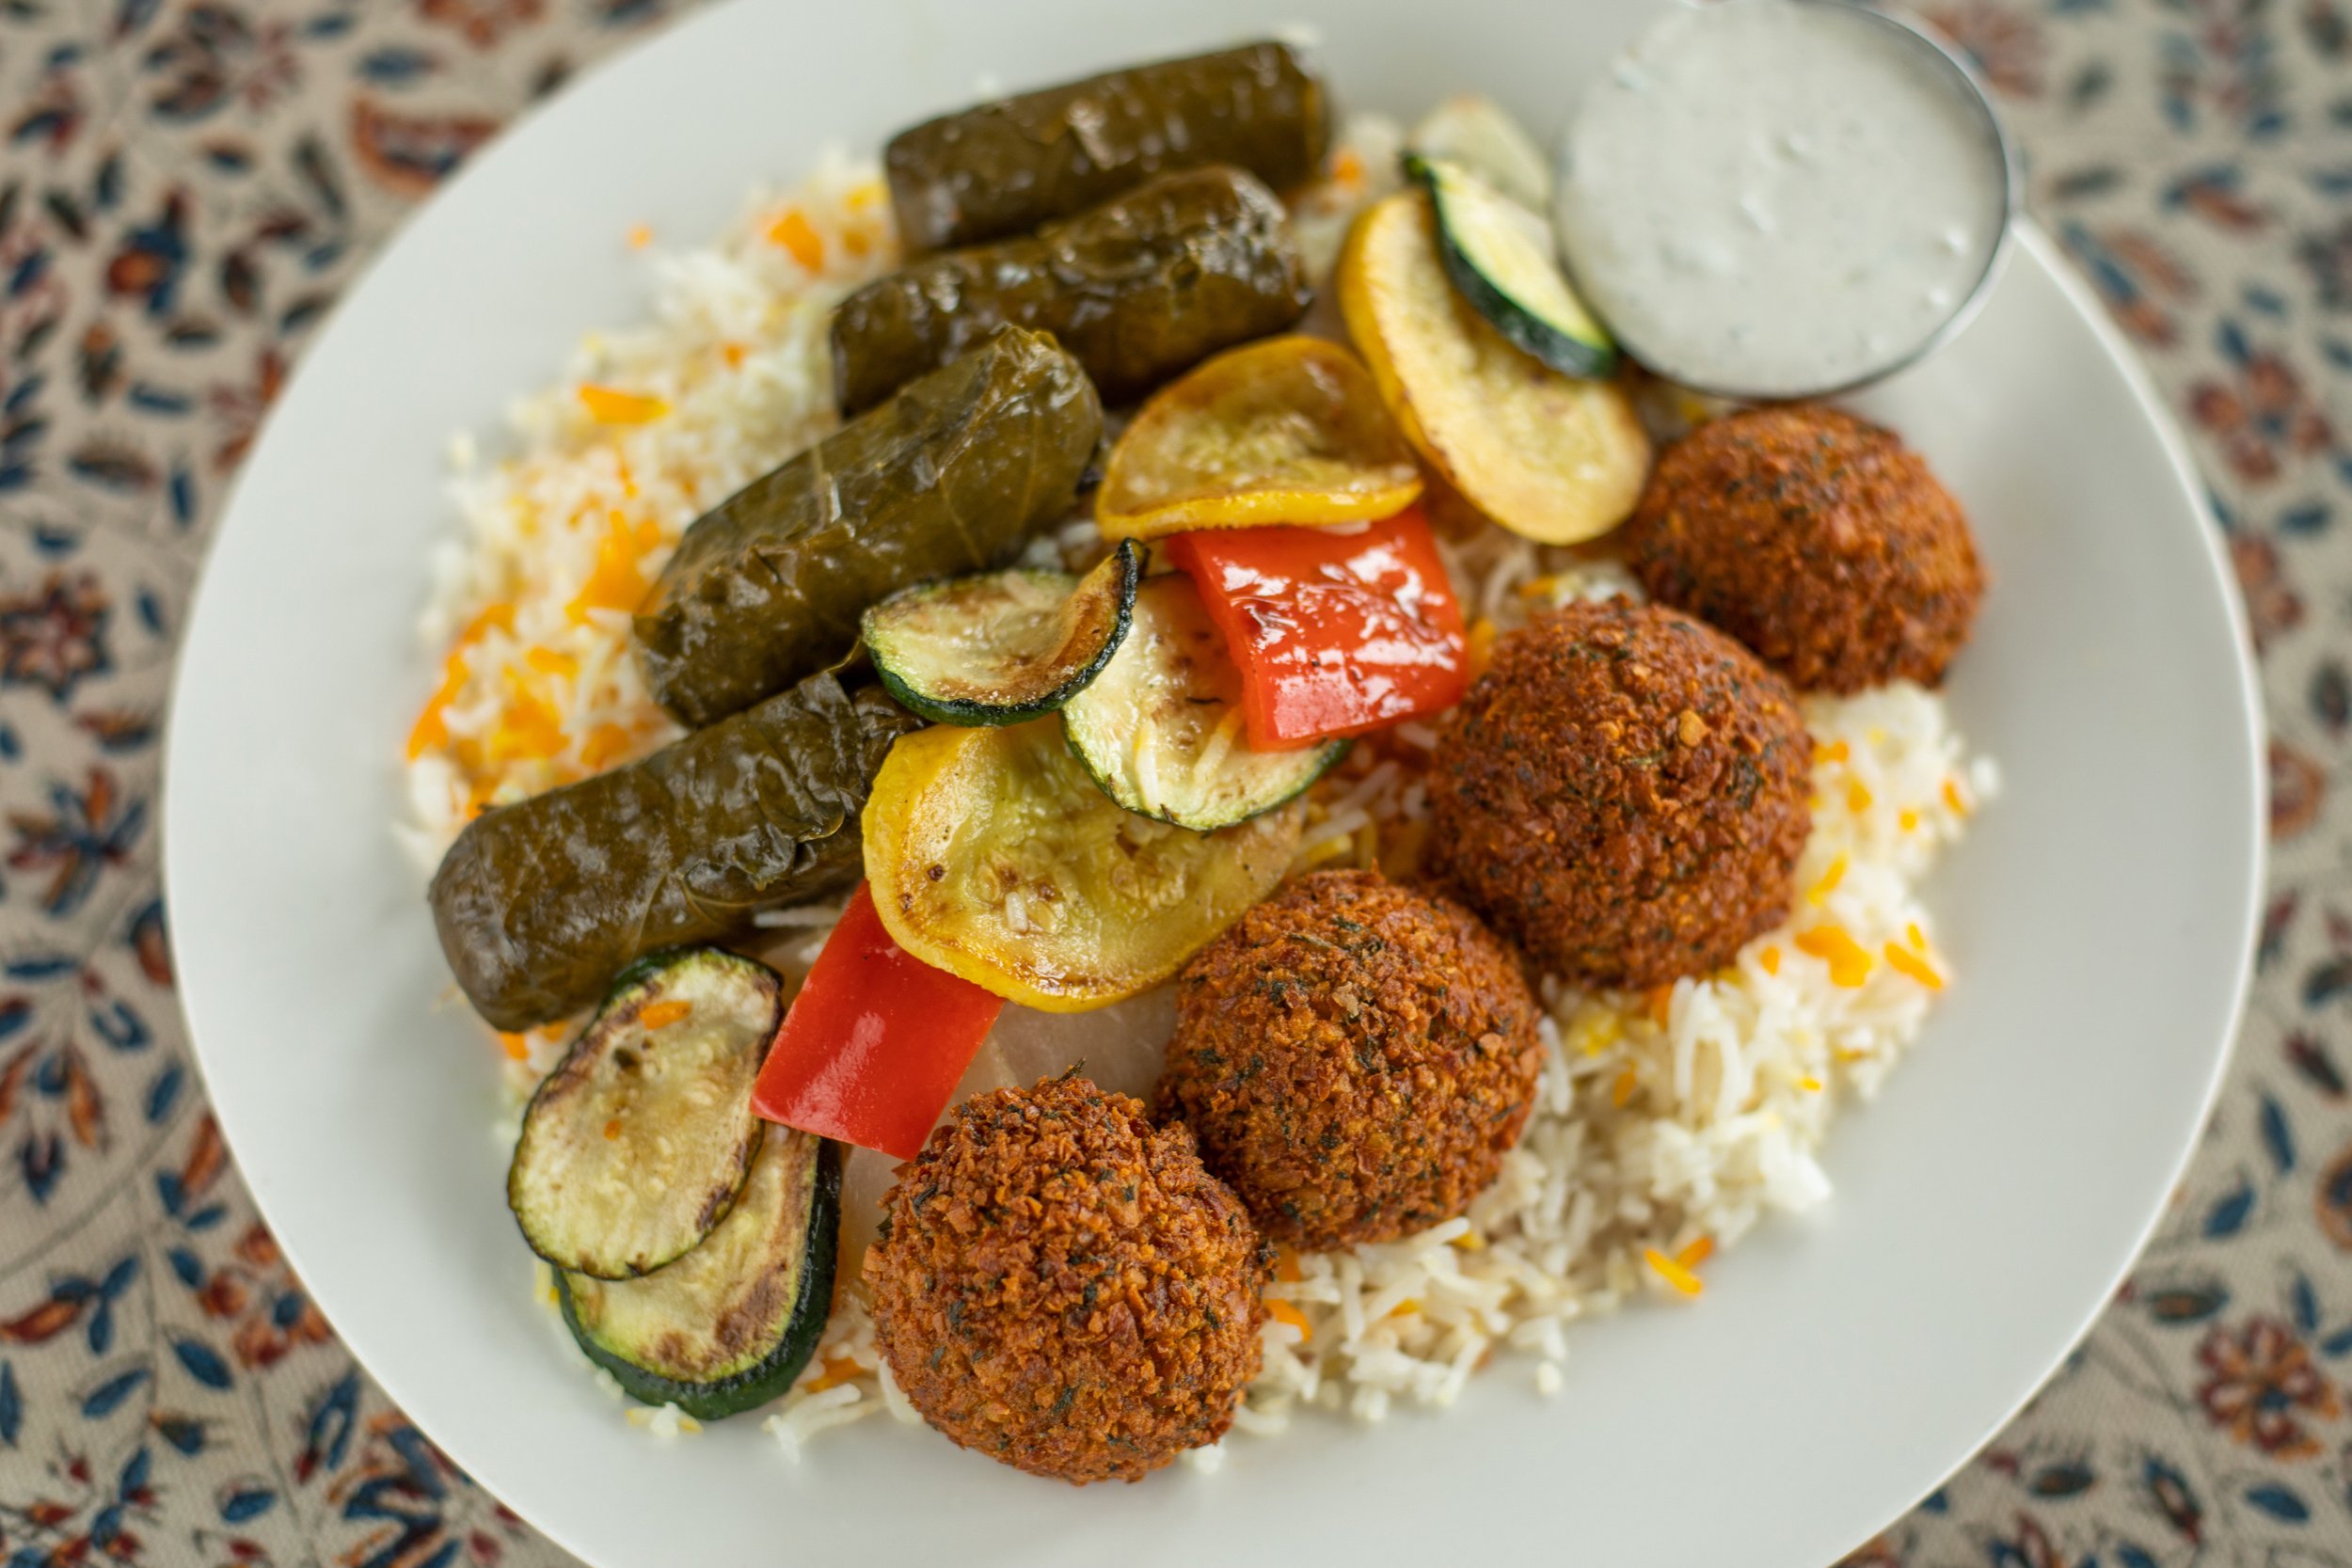 East Side Pockets, Mediterranean Food, Middle Eastern Food, Falafel,  Kabobs, Gyros, Soups, Salads